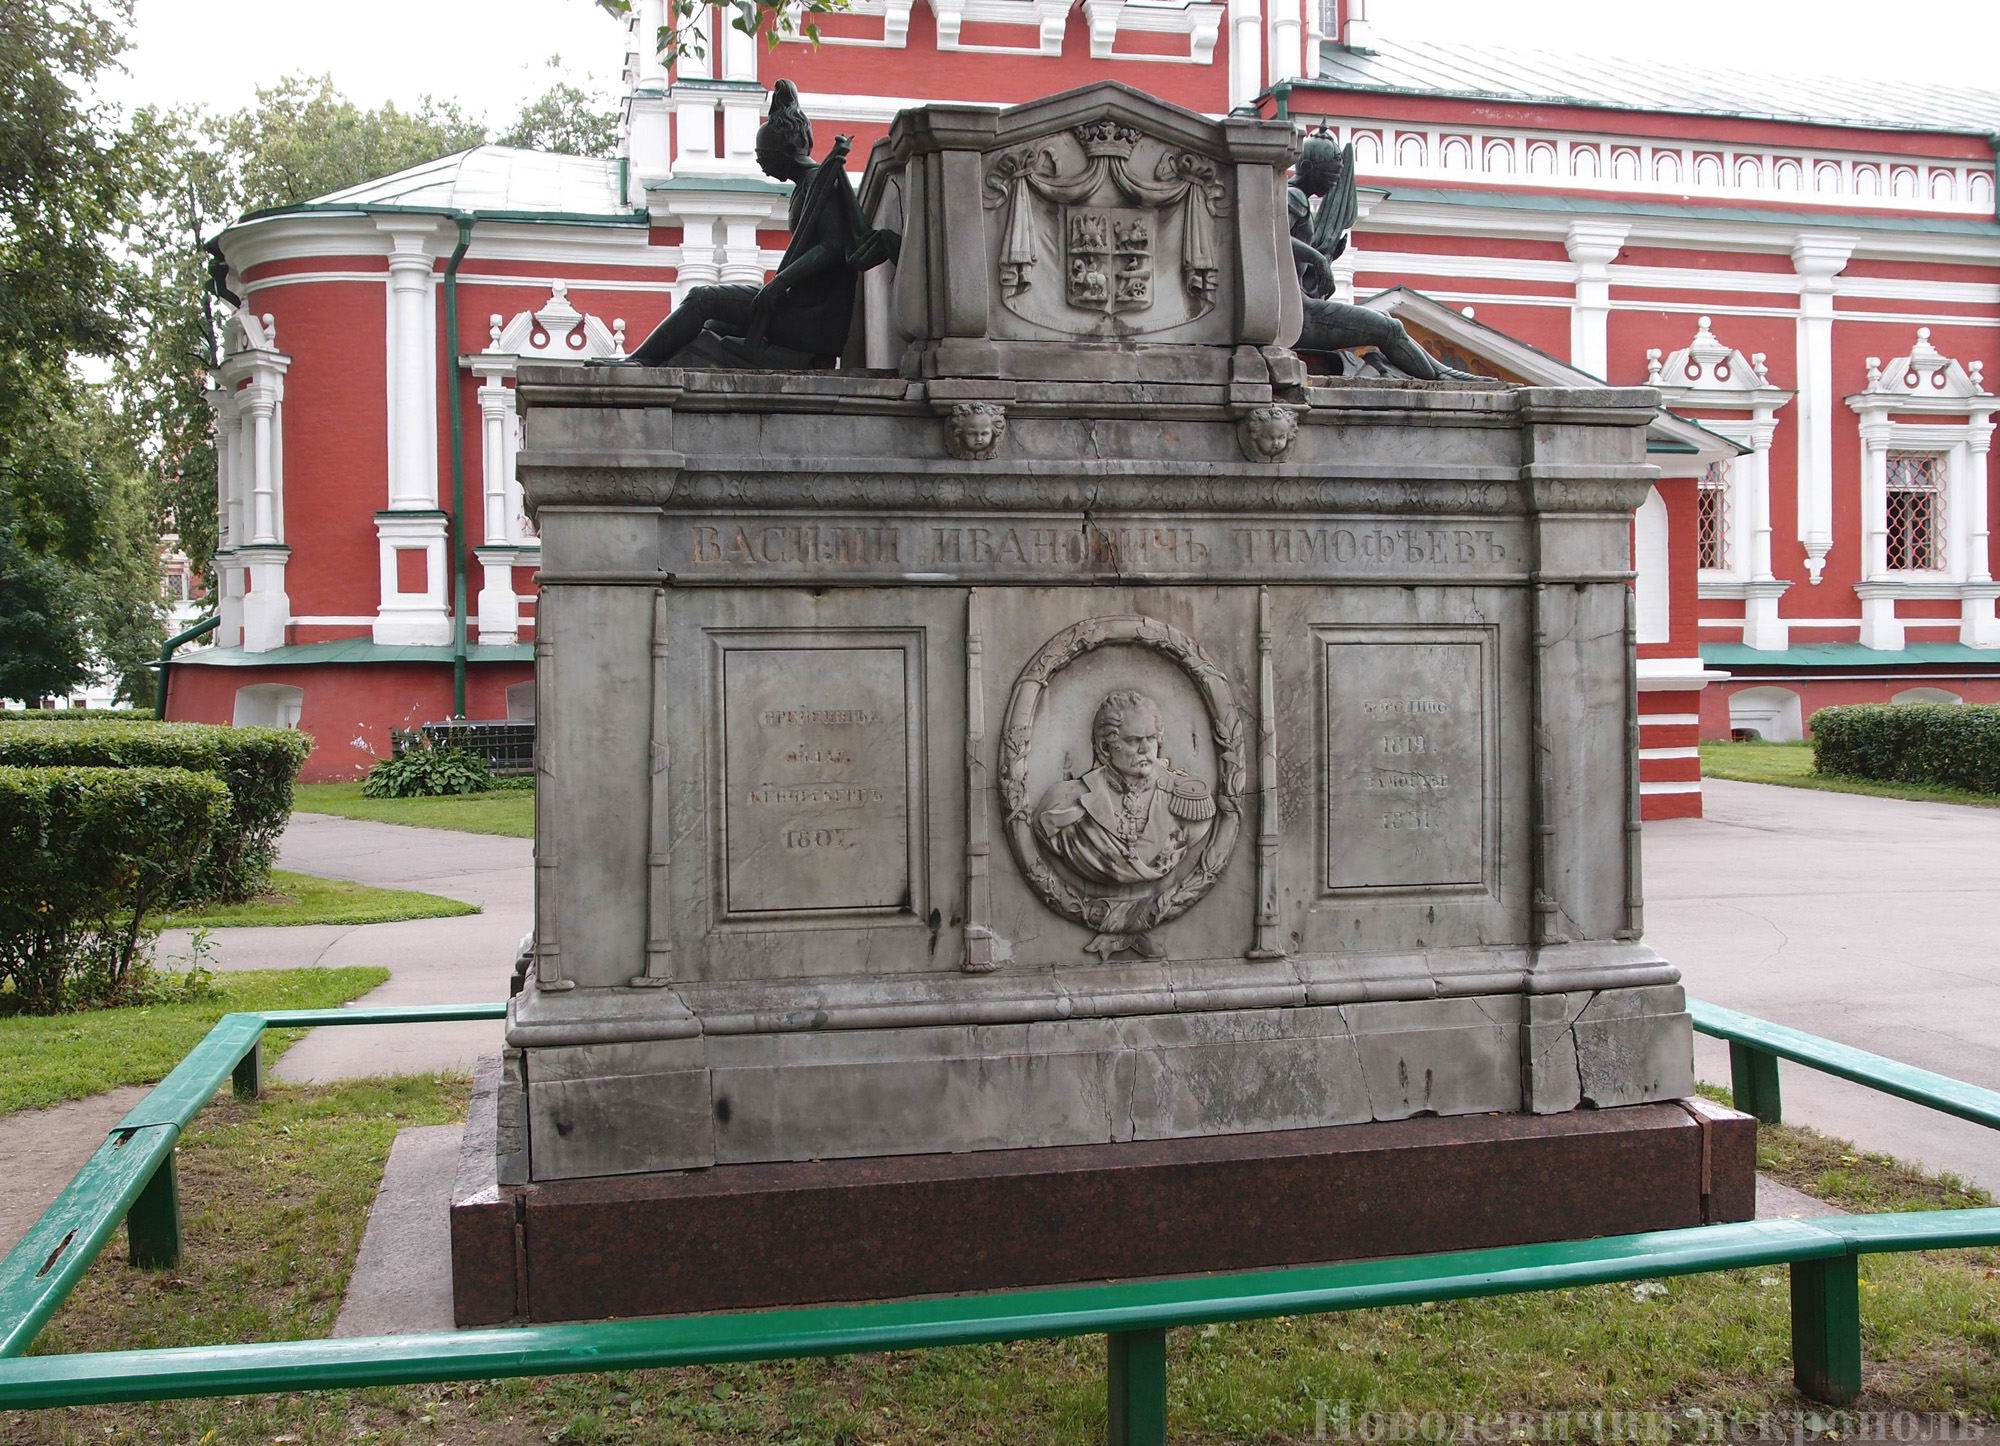 Памятник на могиле Тимофеева В.И. (1783–1850), в Новодевичьем монастыре. До реставрации в 2012.